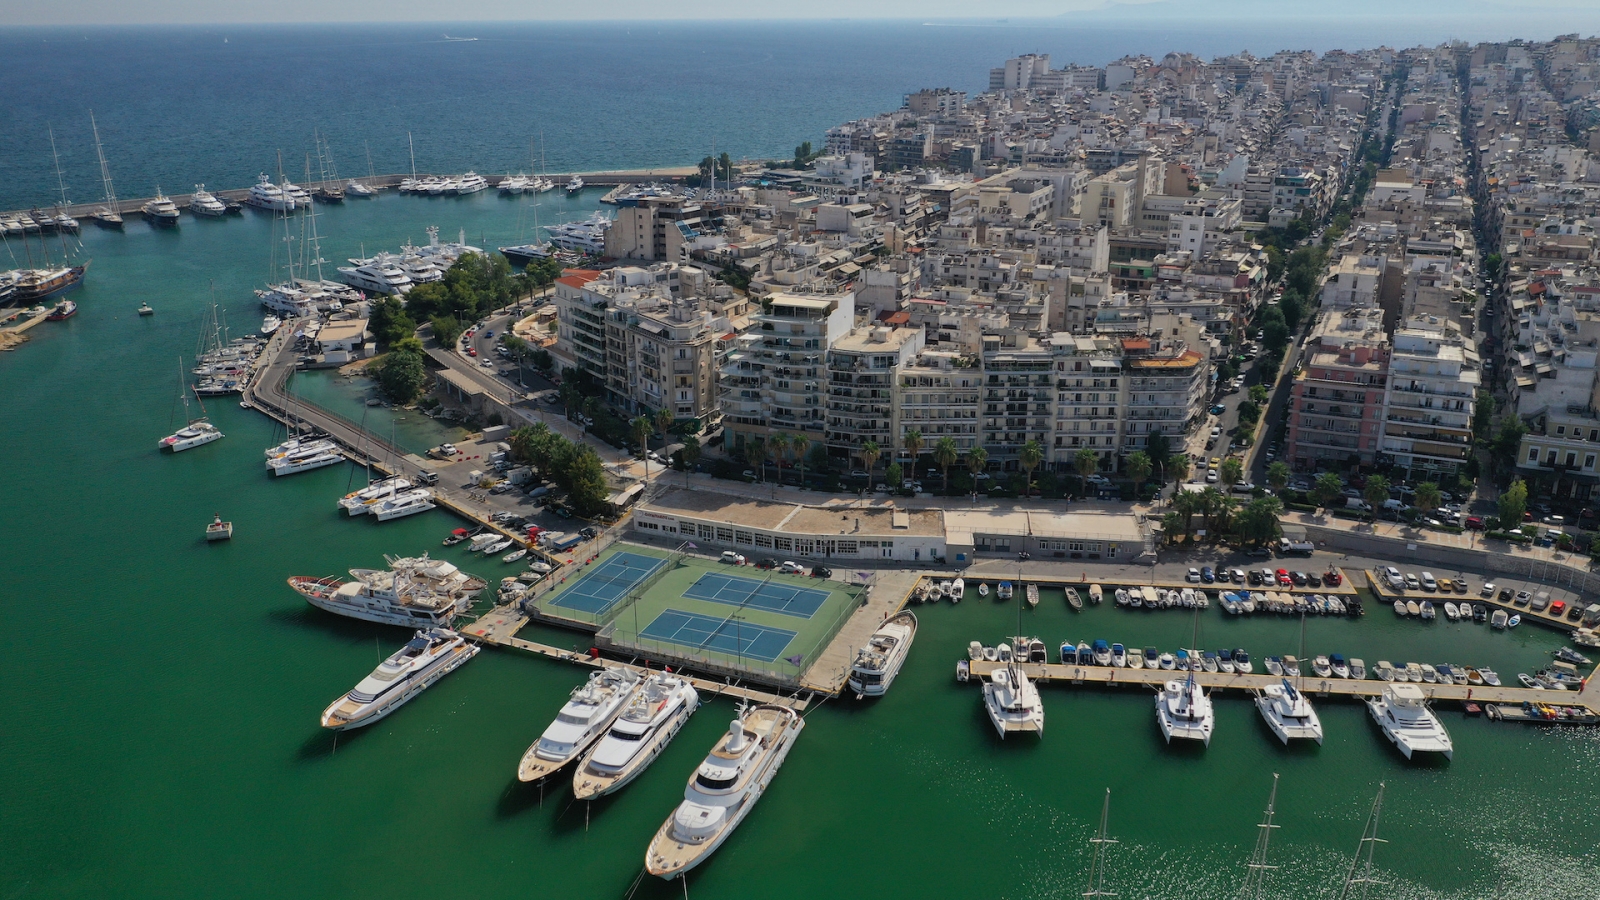 Foto aerea drone del famoso porto e Marina di Zea o Pasalimani nel cuore del Pireo, Attica, Grecia